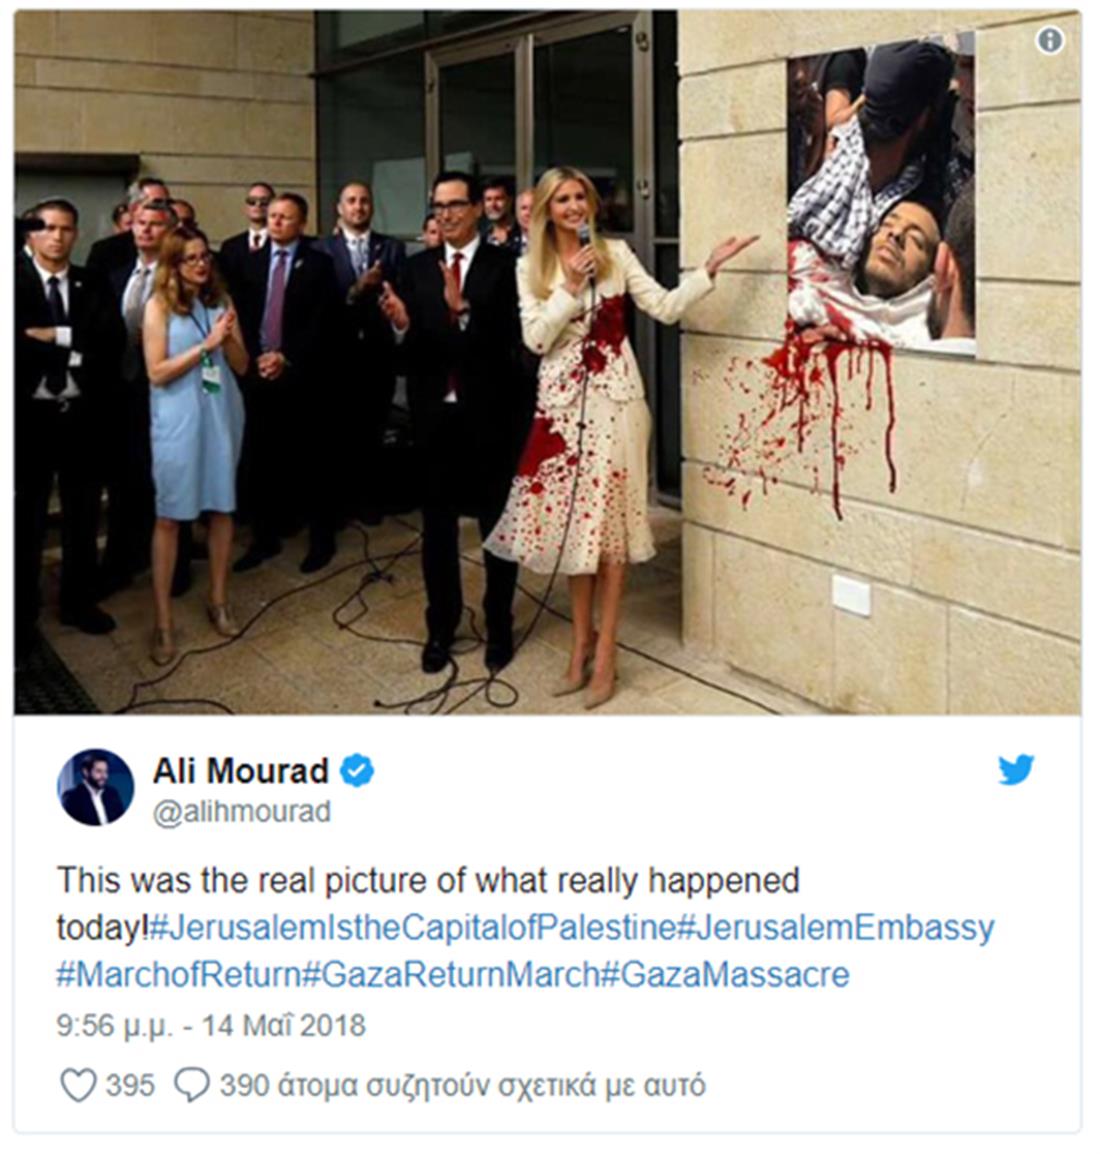 φόρεμα - Ιβάνκα Τραμπ - αίμα - Γάζα - tweets